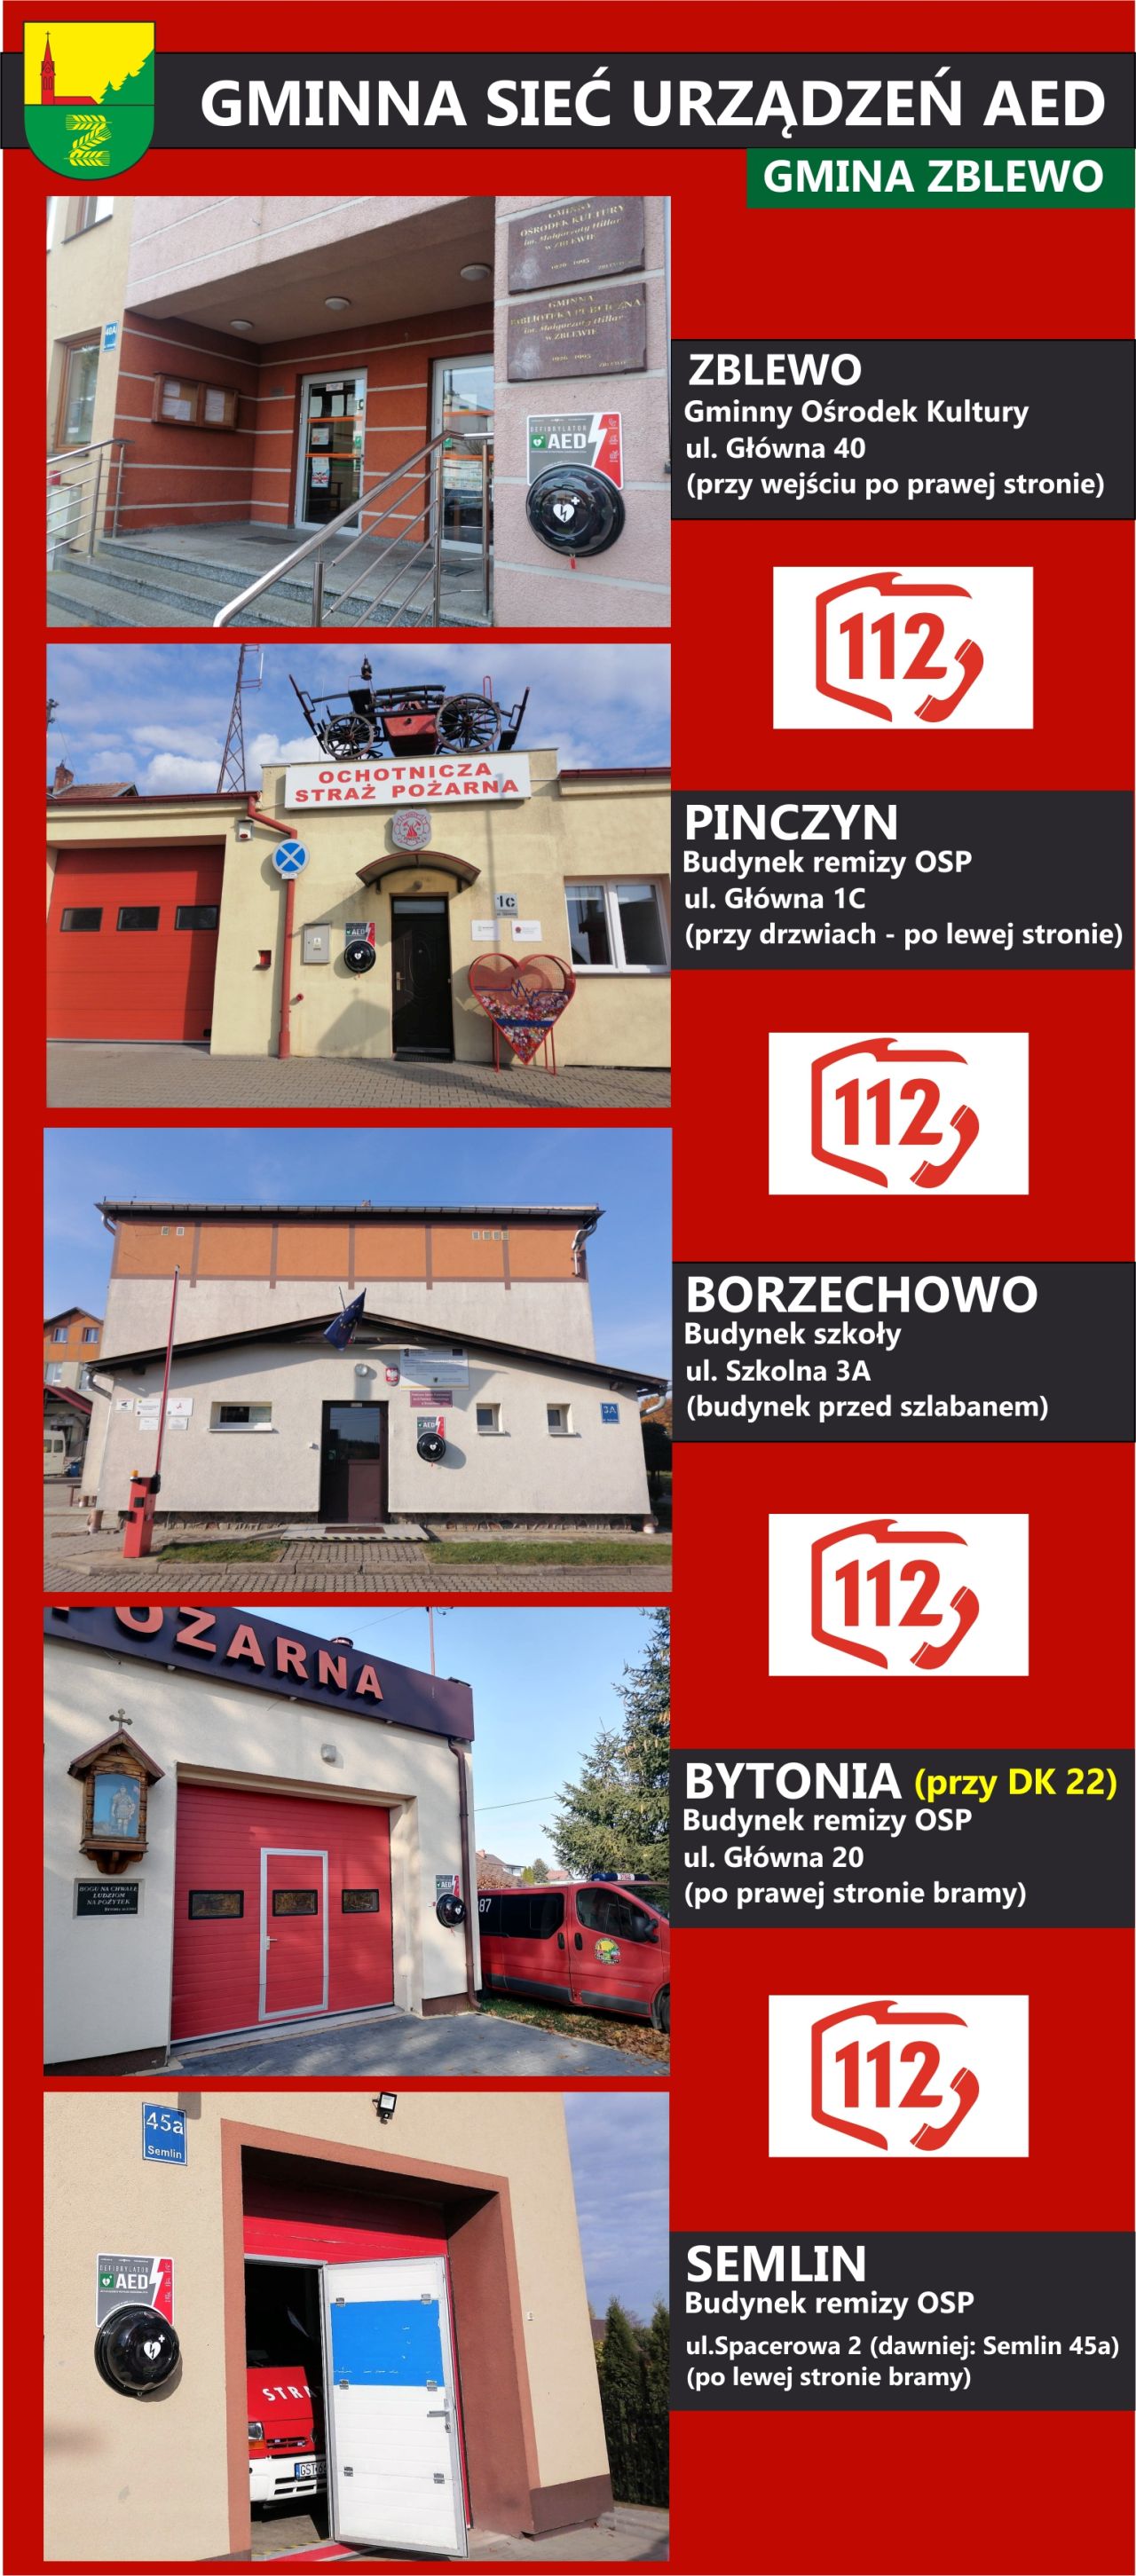 Zdjęcia przedstawia lokalizację aparatów AED w gminie Zblewo